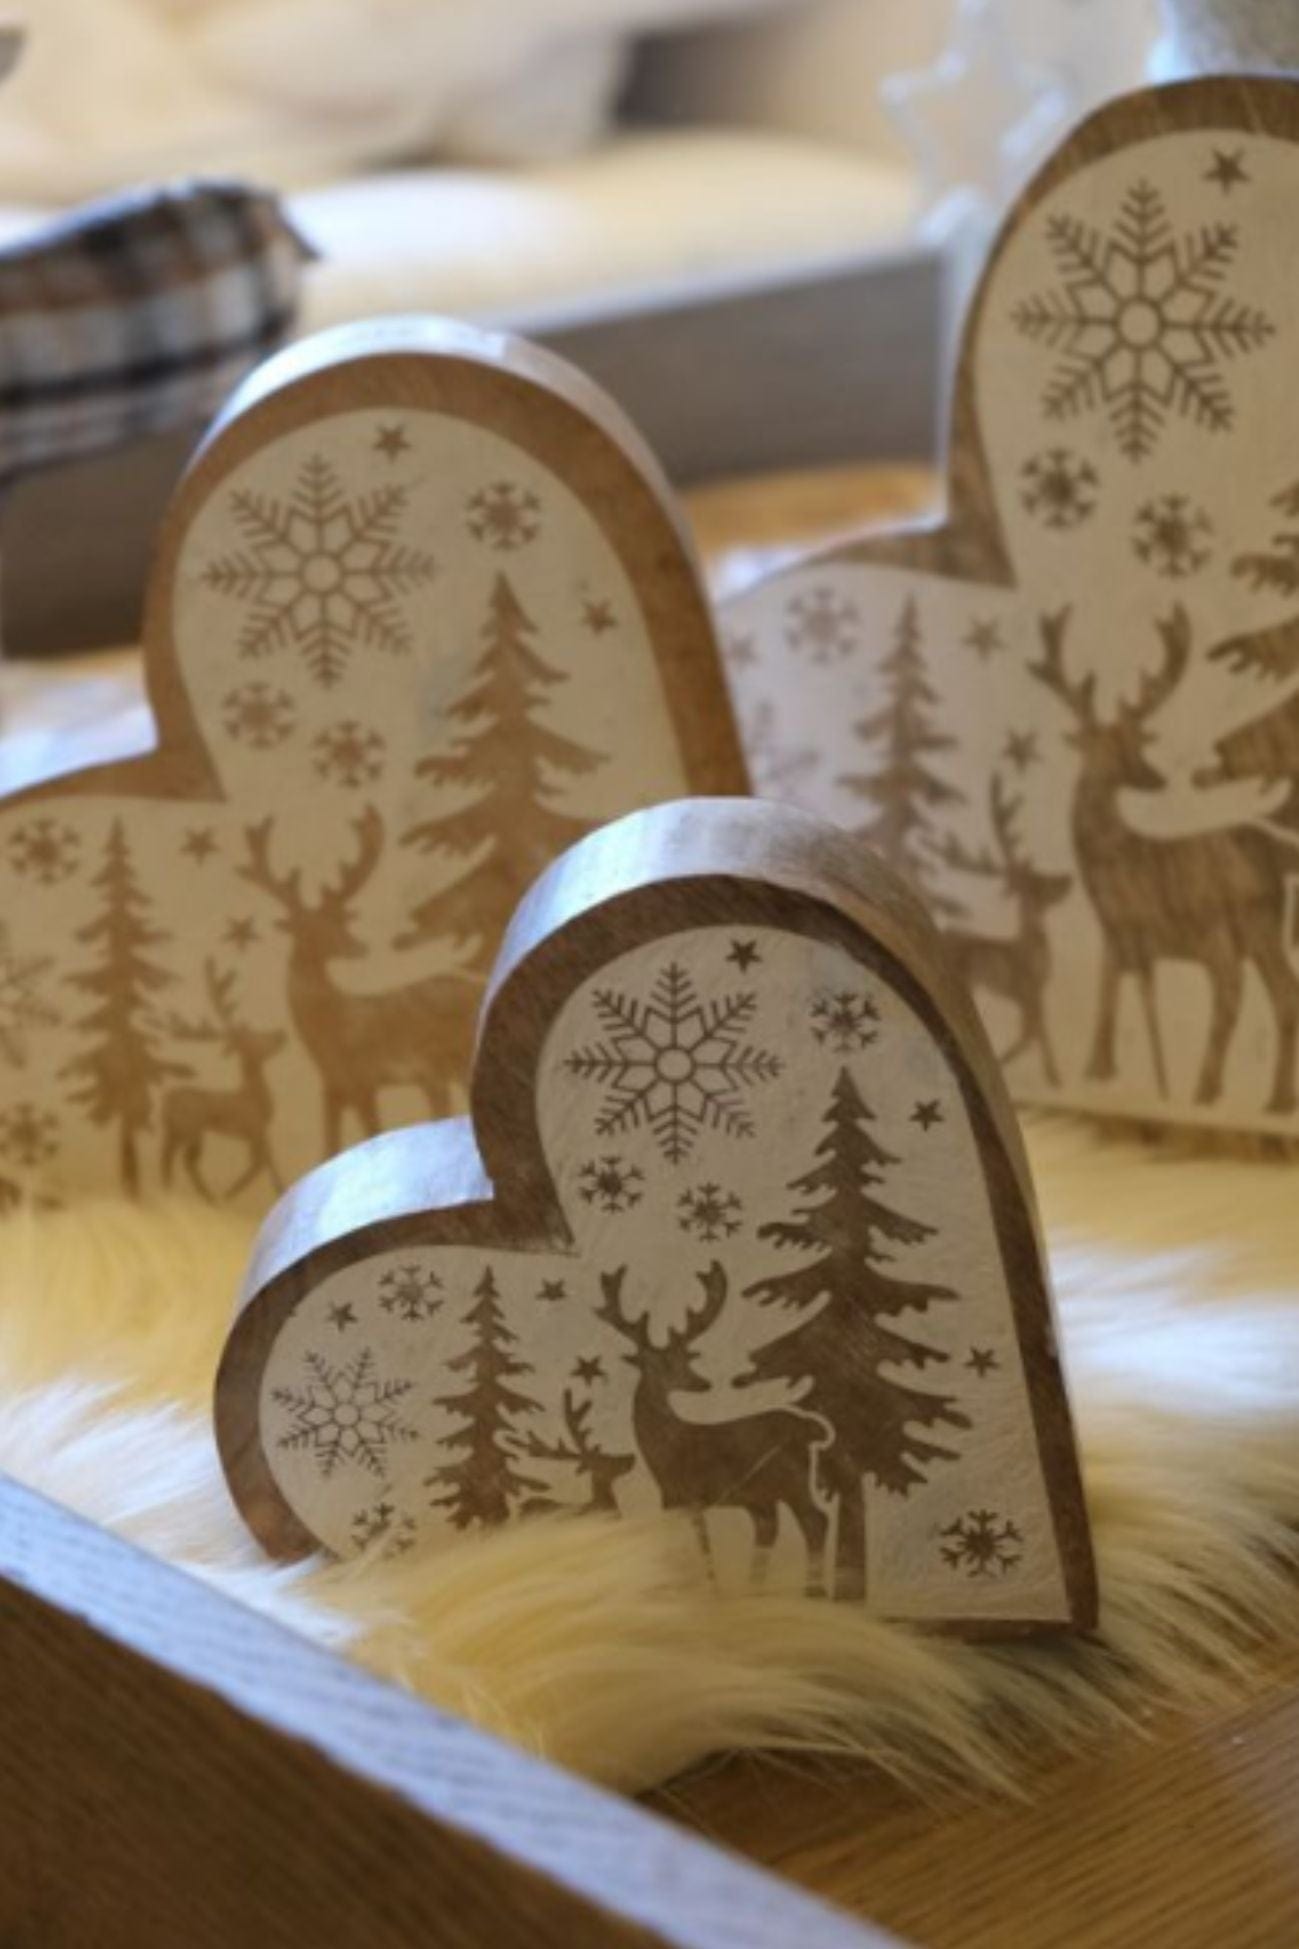 Blanc MariClo' Storie di Cantastorie Storie di Cantastorie - Decoro natalizio a forma di cuore in legno | Blanc MariClo'